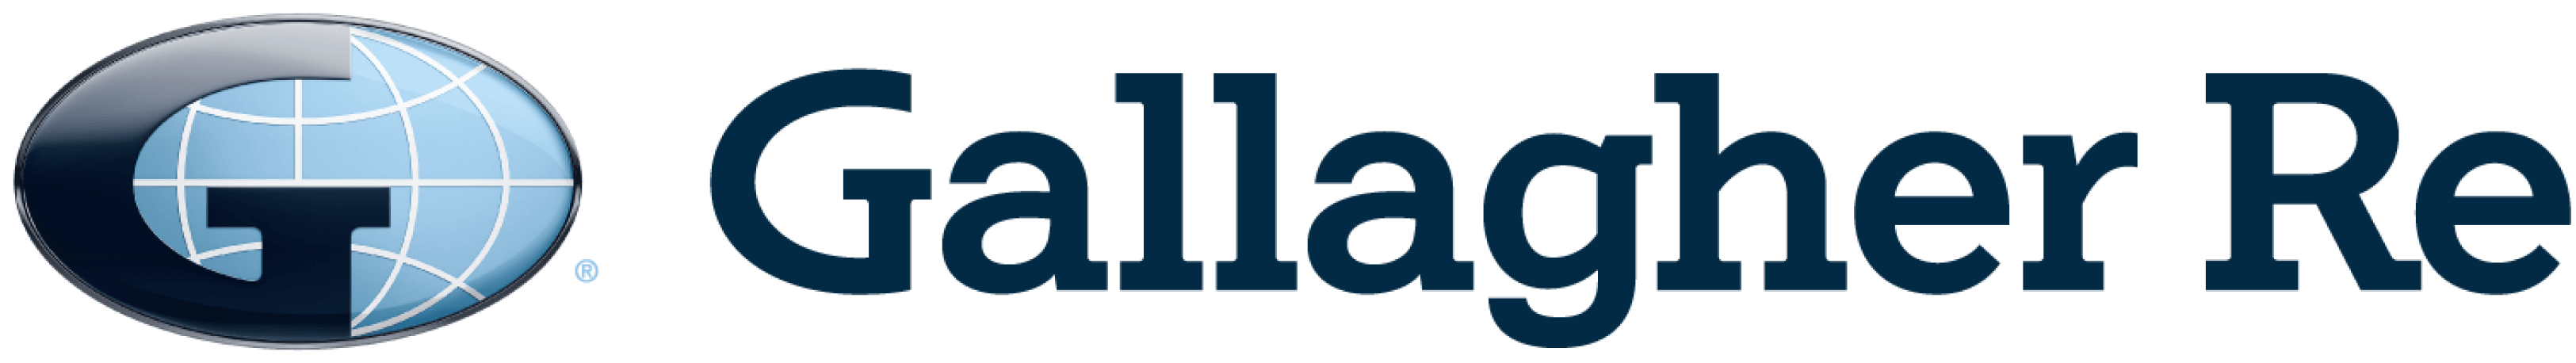 Gallagher Re logo